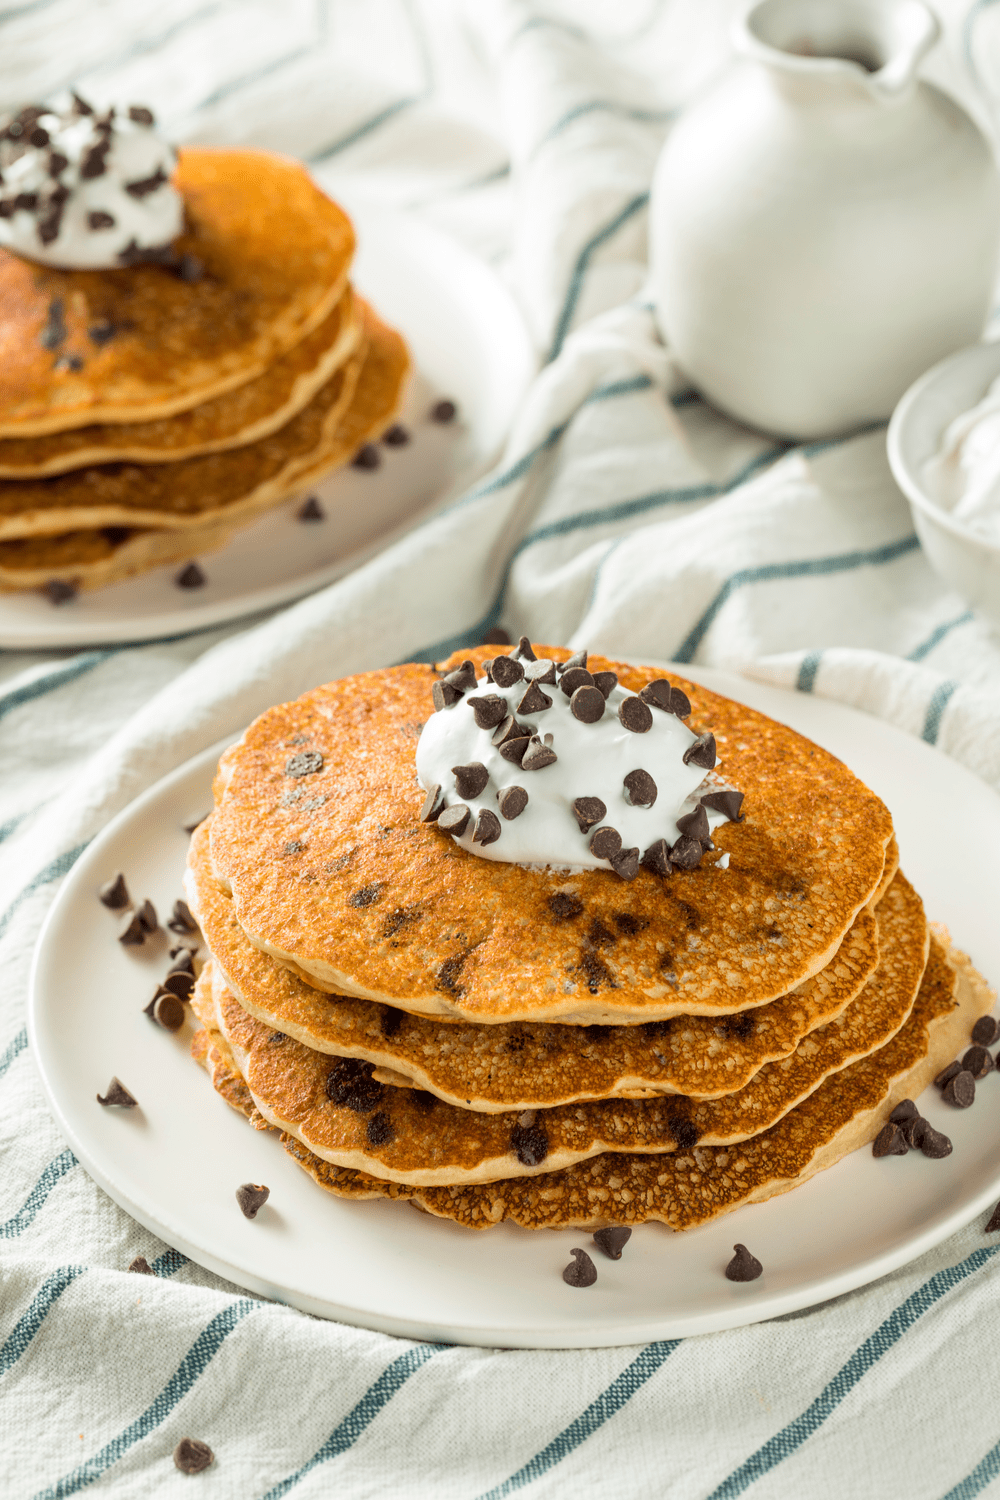 30 recettes faciles de petit-déjeuner sucré - Cakes Paradise